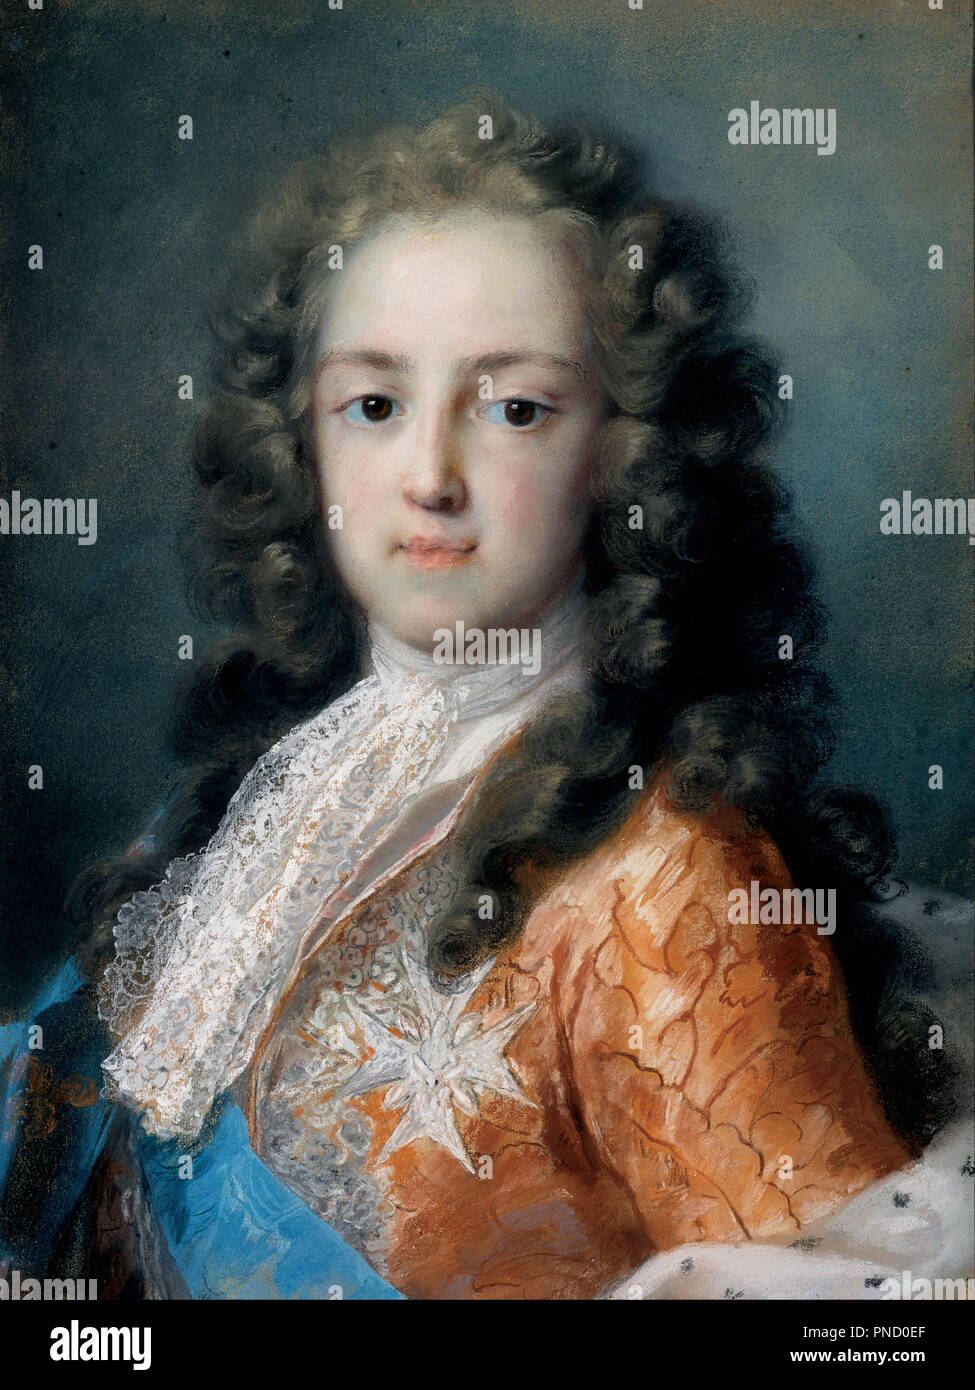 Louis XV de France (1710-1774) en tant que Dauphin. Date/période : 1720 - 1721. La peinture. Hauteur : 505 mm (19.88 in) ; Largeur : 385 mm (15.15 in). Auteur : CARRIERA, Rosalba. ROSALBA CARRIERA. Rosalba Carriera, Giovanna. Banque D'Images